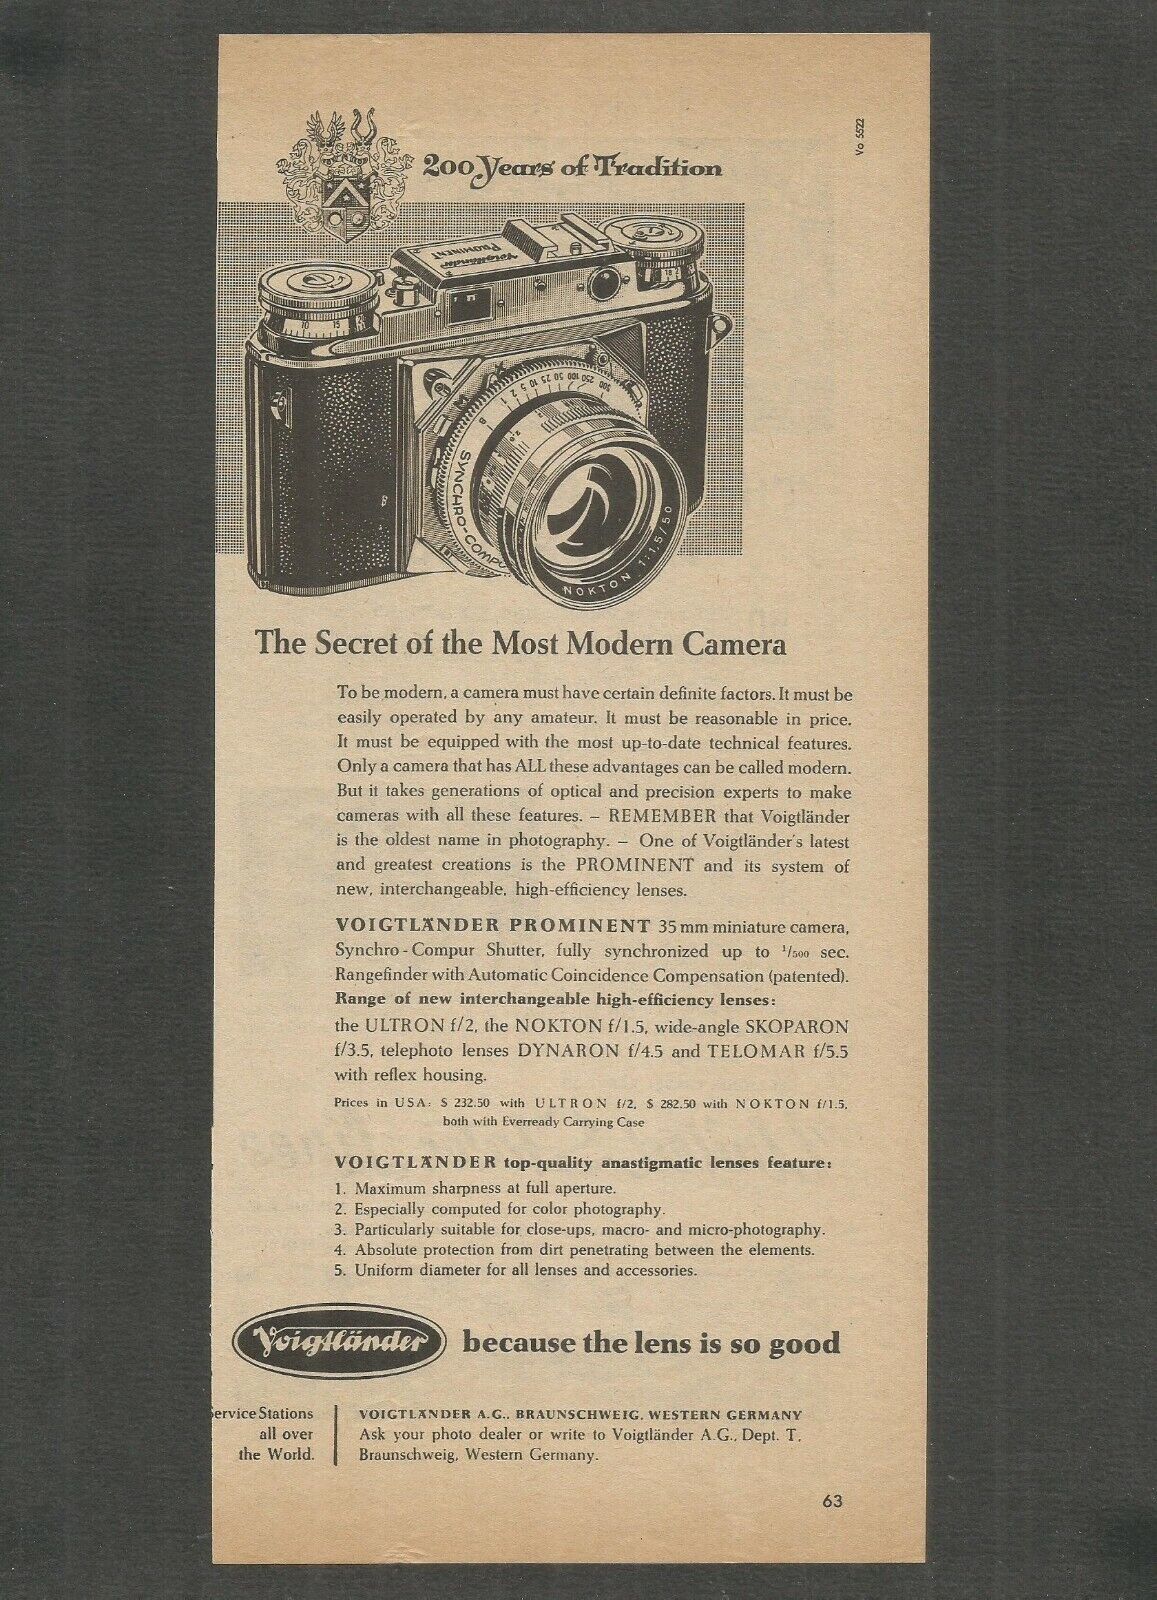 VOIGTLANDER-The Secret of the Most Modern Camera-1955 Vintage Print Ad